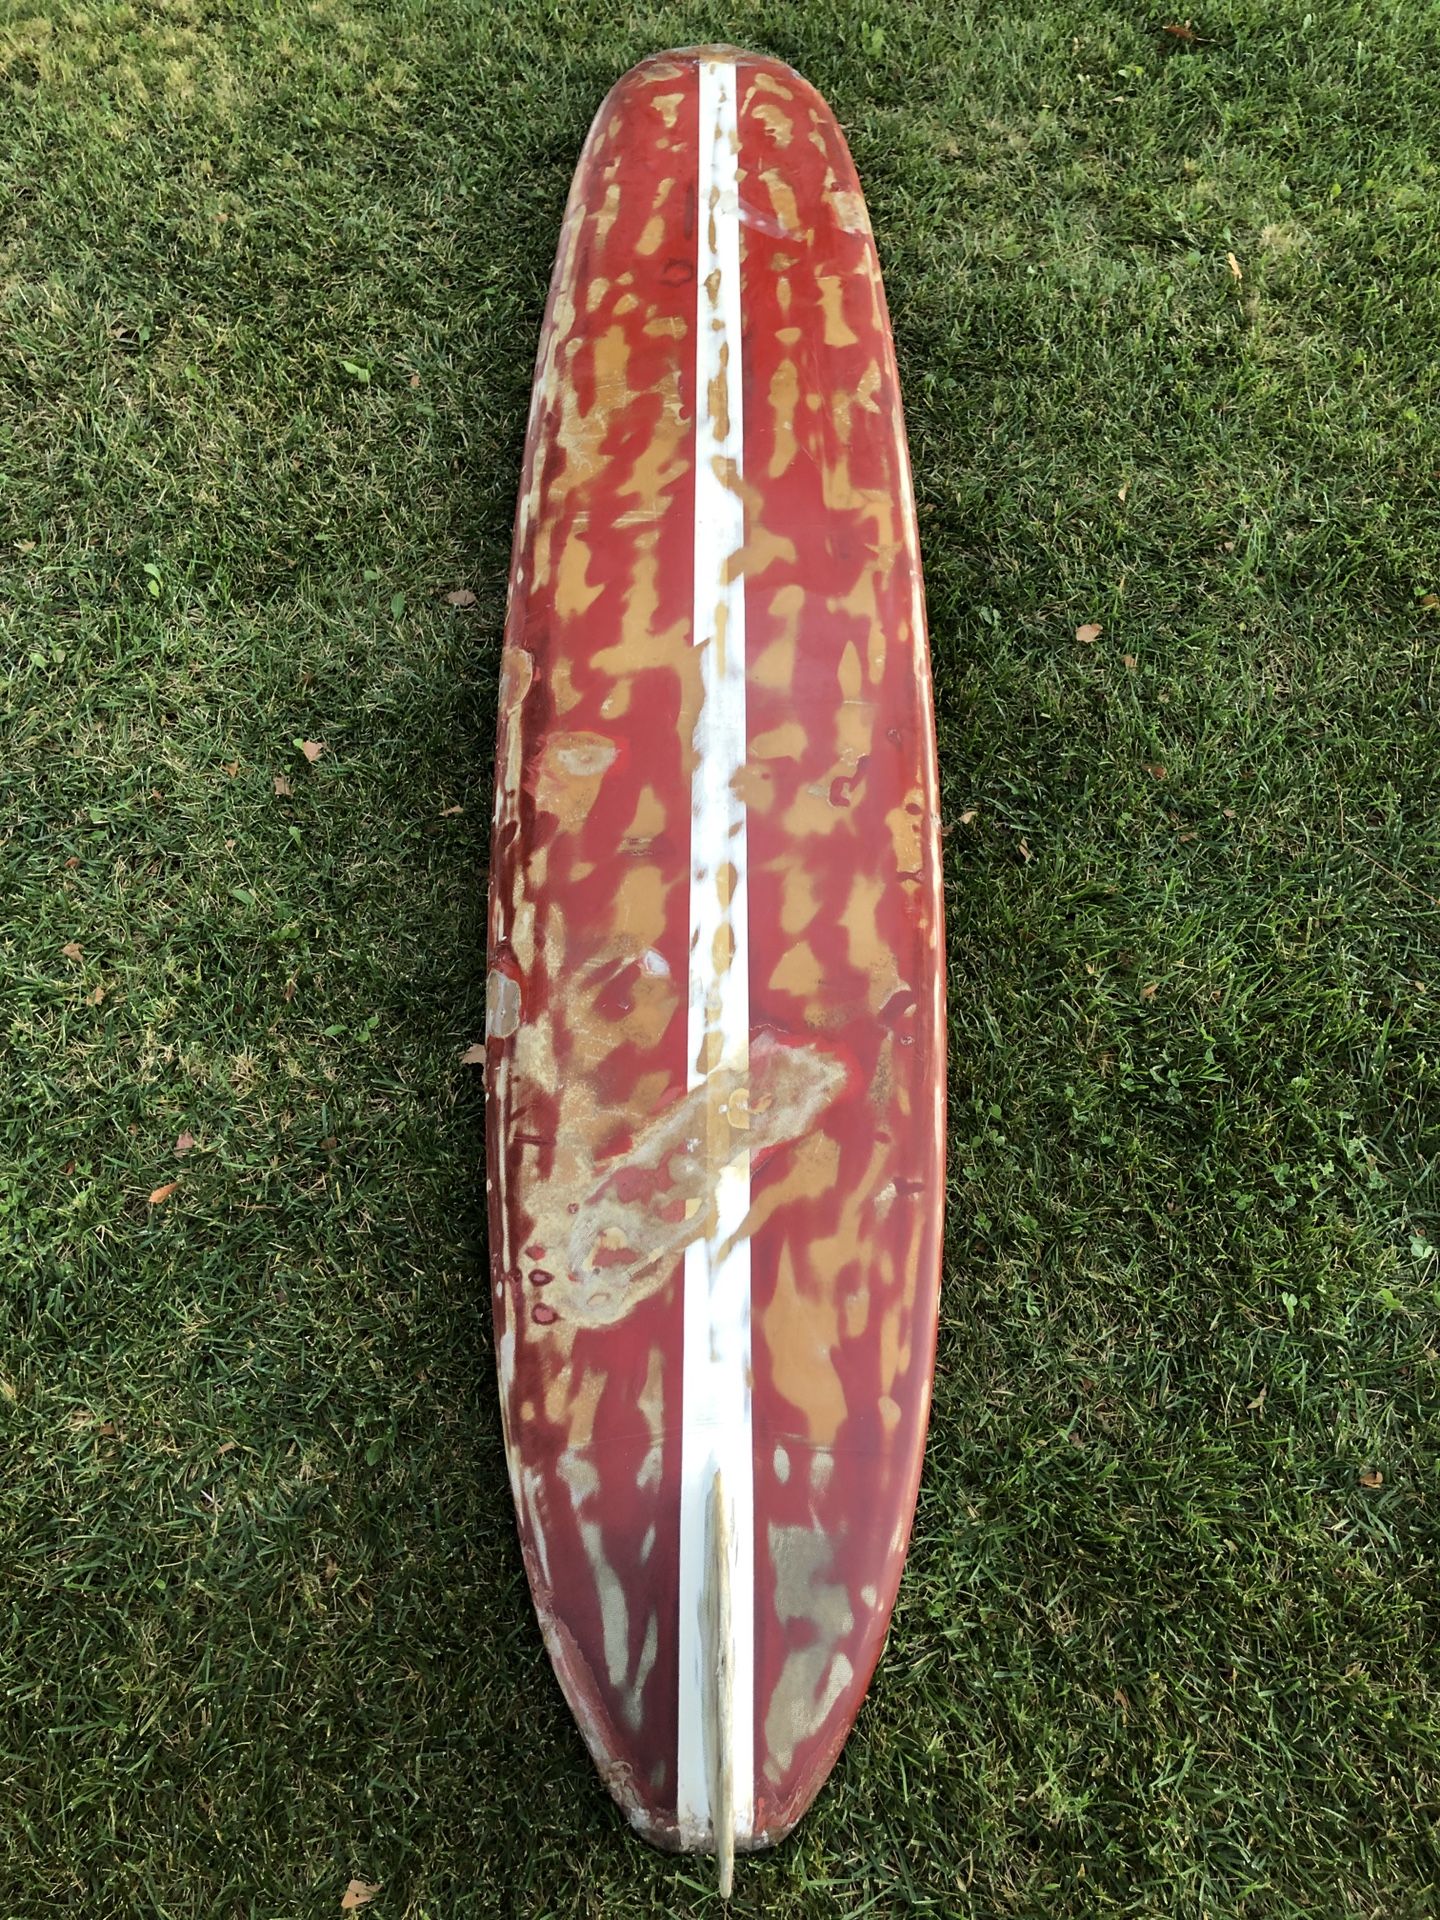 Late 50’s-60’s Hobie Single Fin Longboard Surfboard